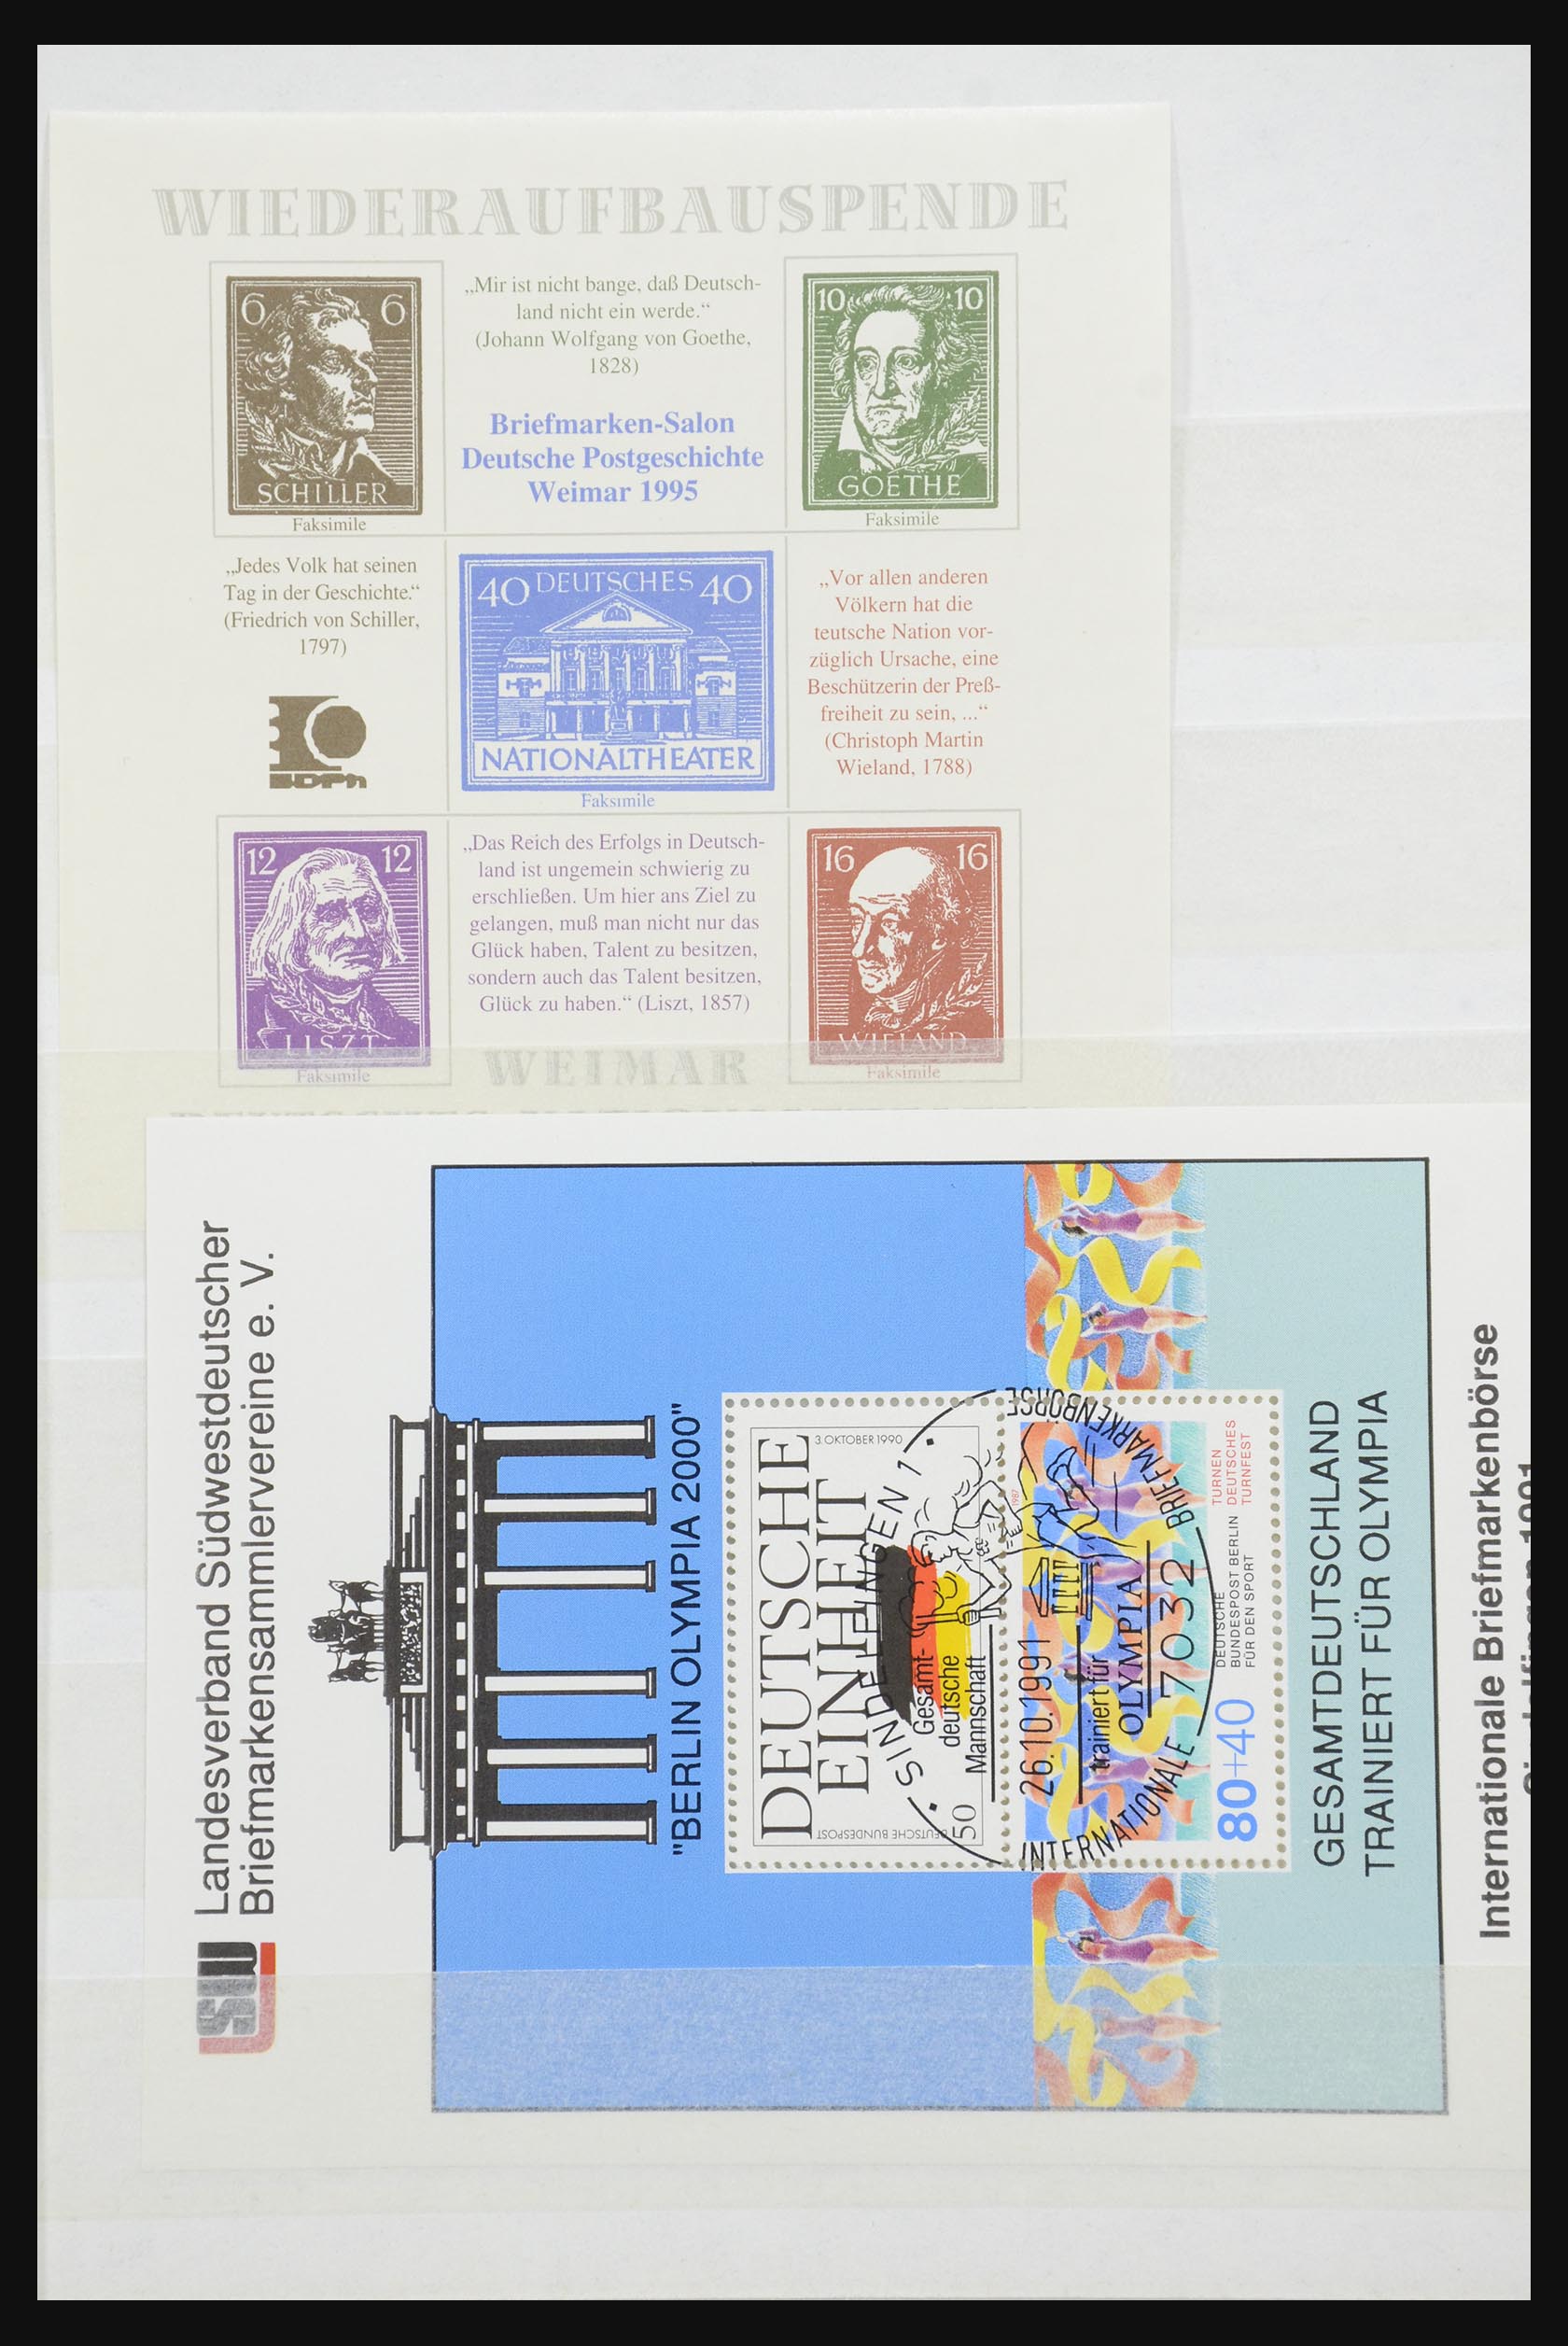 32050 045 - 32050 Bundespost speciale blokken 1980-2010.